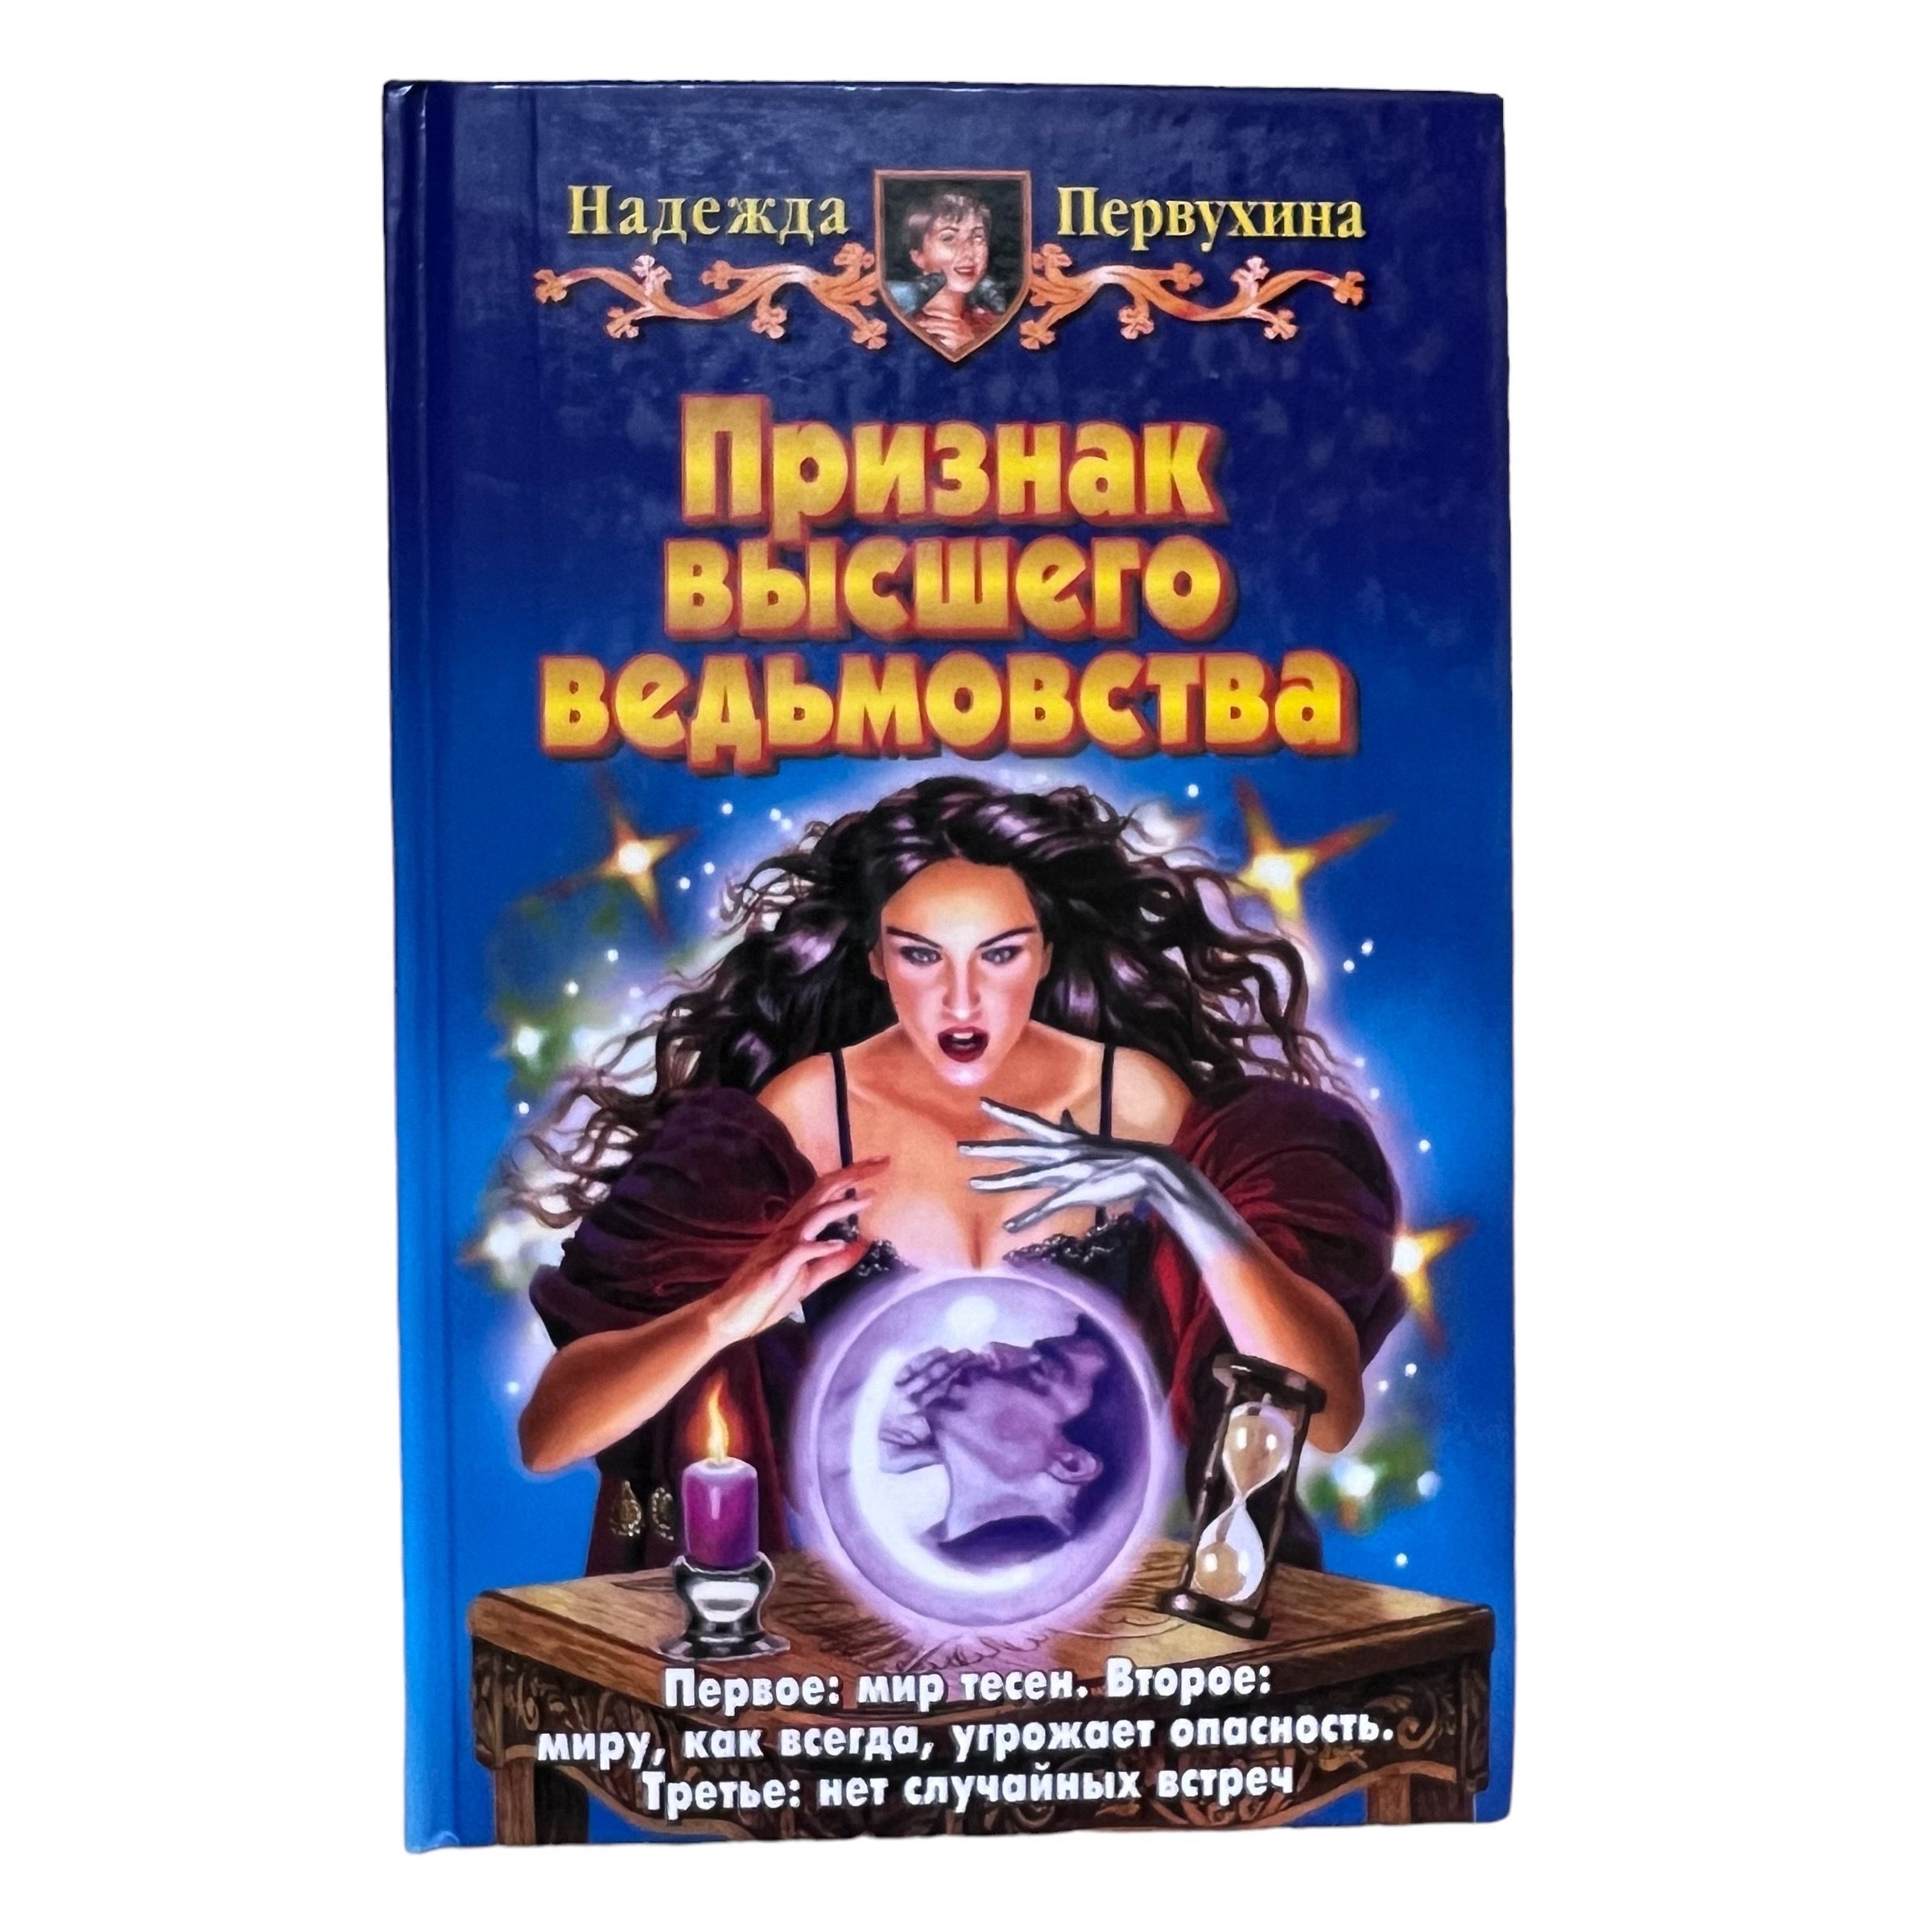 Читать книгу первухина ученик 6. Купить в Новосибирске книгу Петербург для детей Первухина.